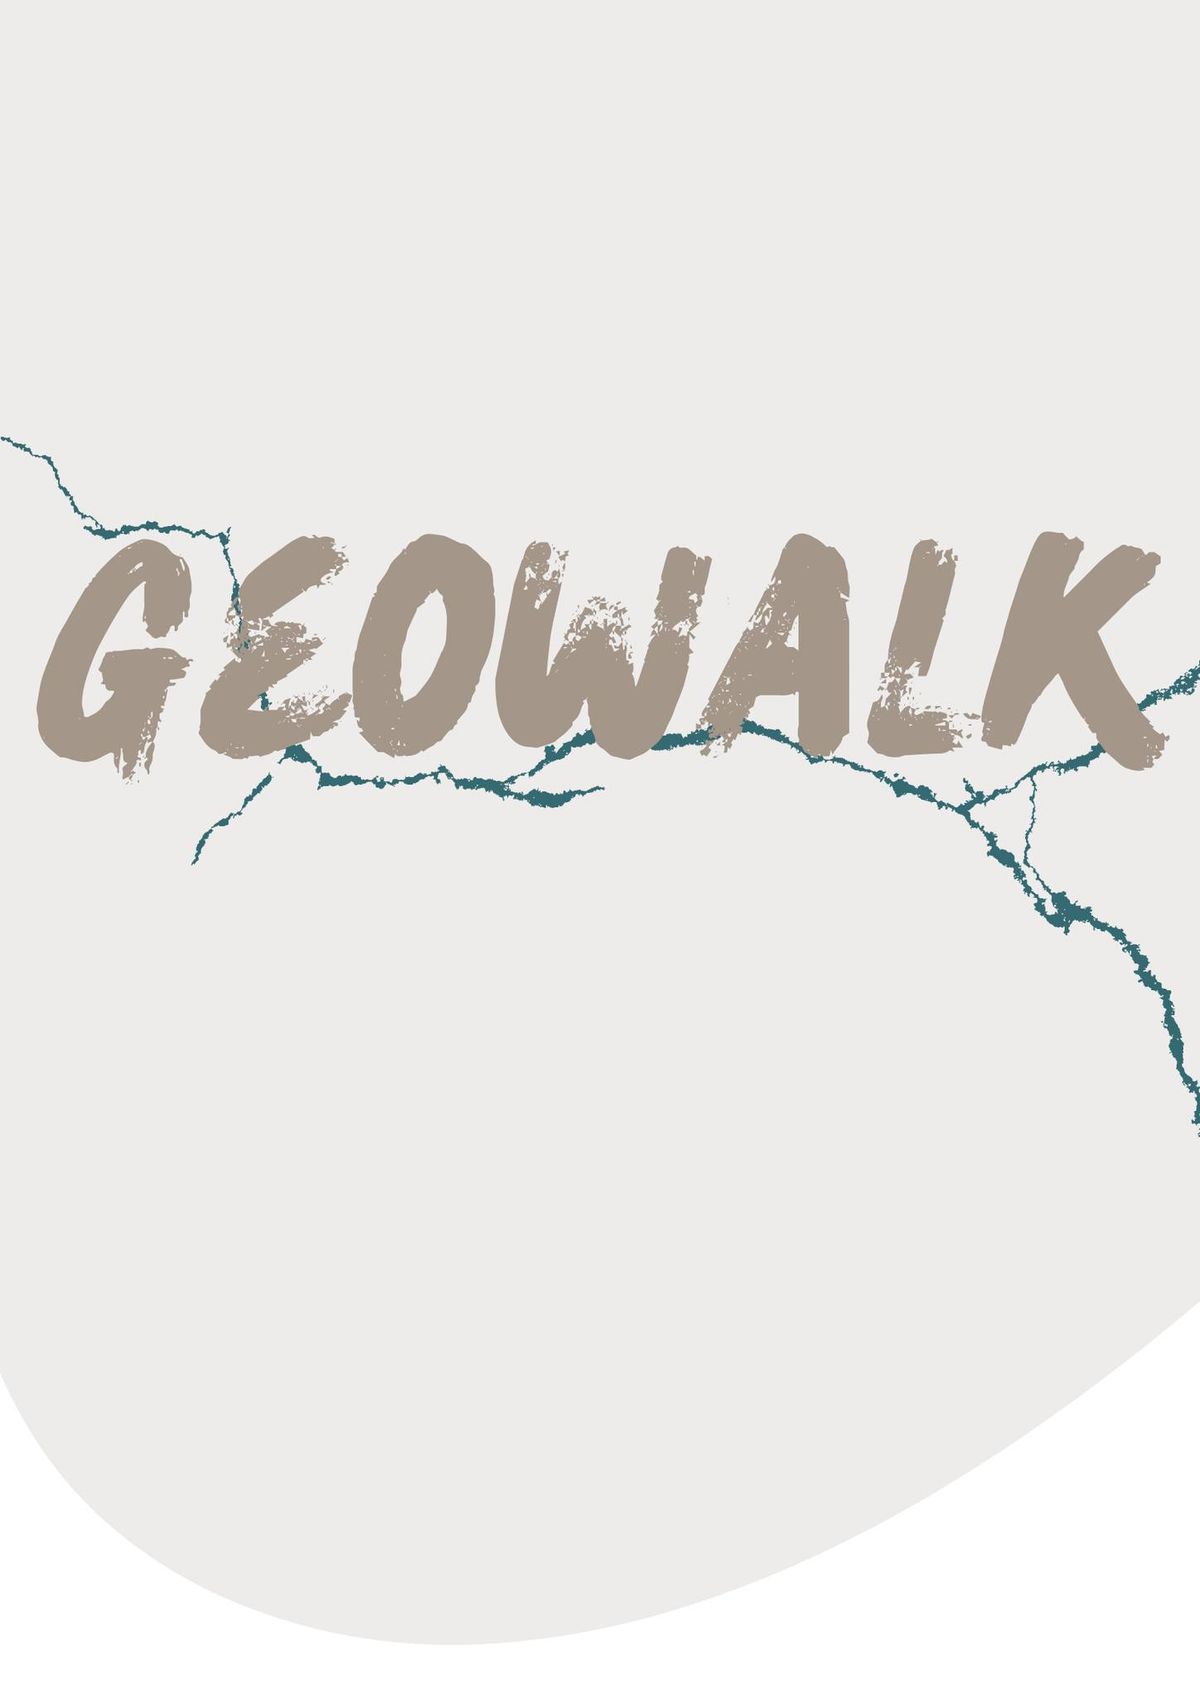 Geowalk